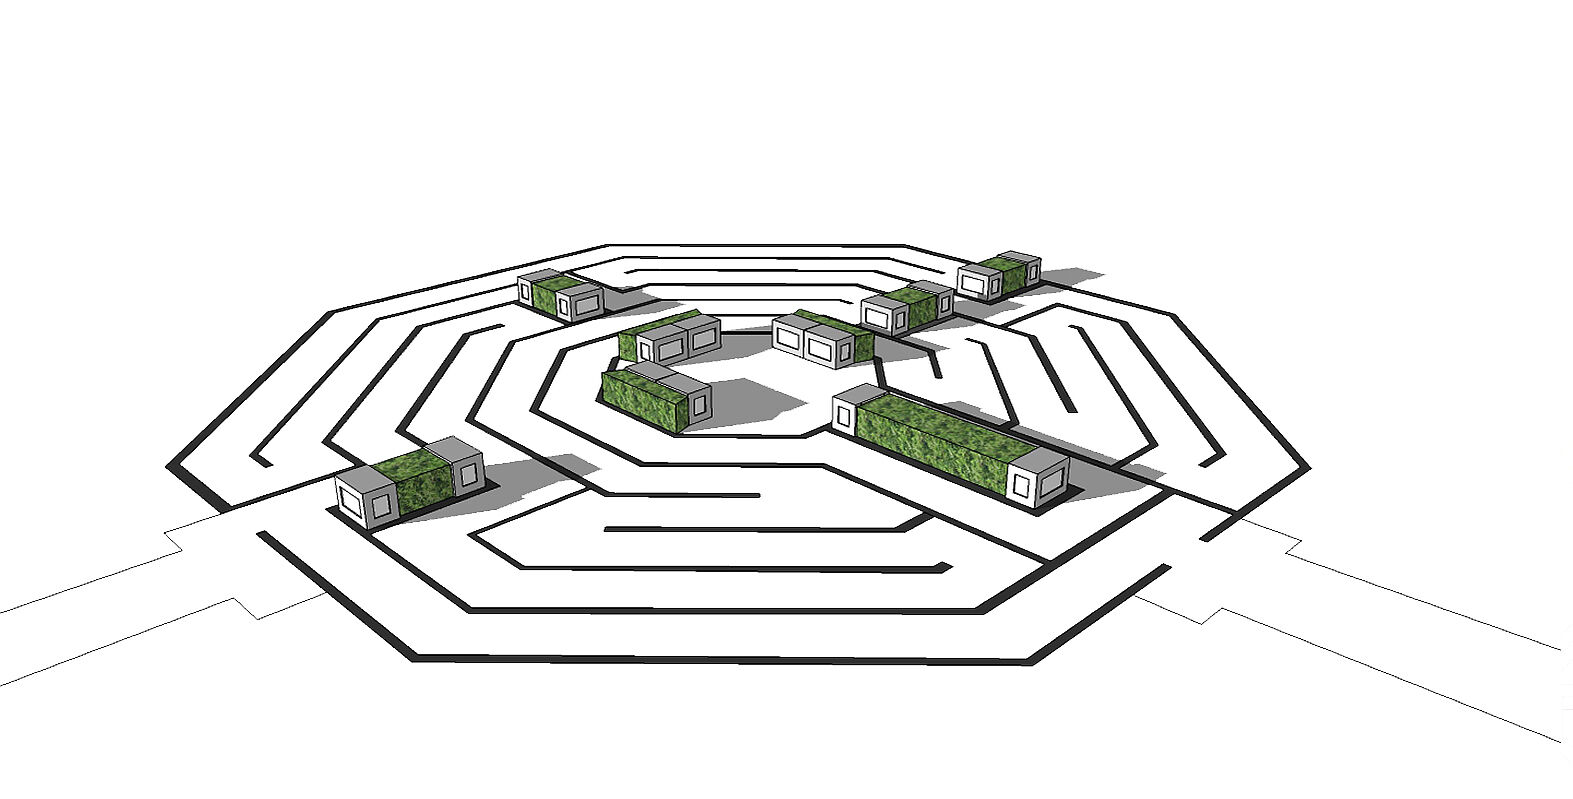 Plan des Neuendettelsauer Labyrinths